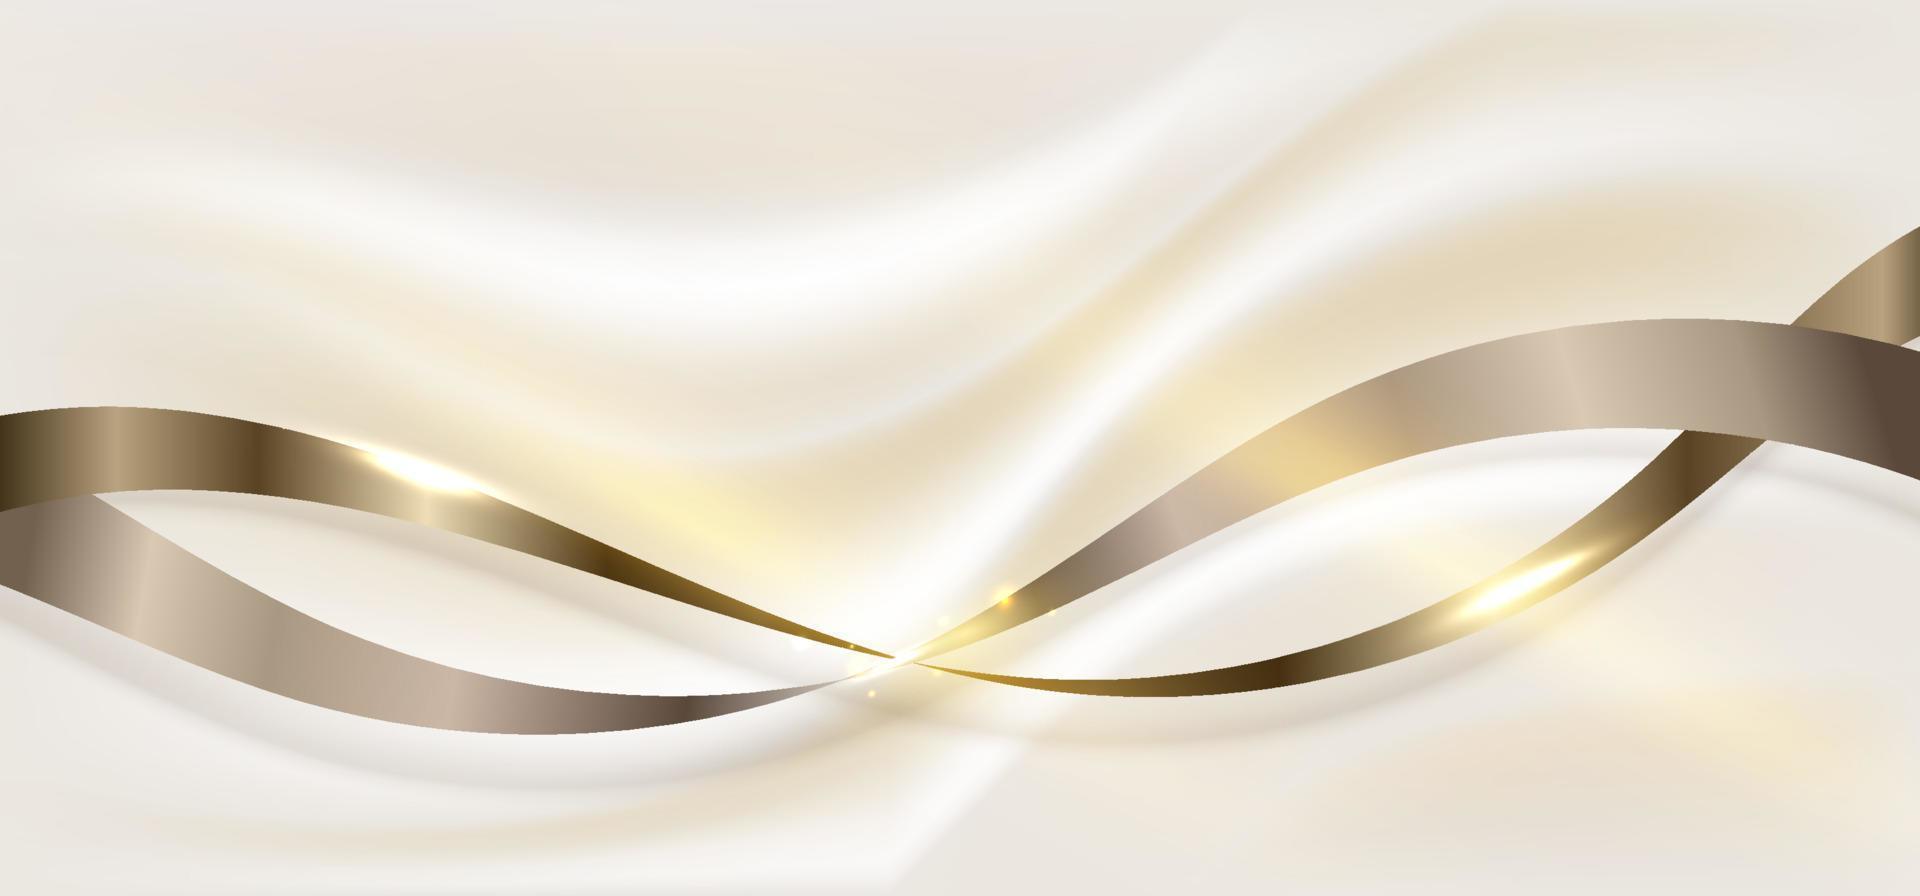 abstrakte 3d-elegante goldene bandelemente und lichteffekte, die funkelnde glitzerdekoration auf cremefarbenem hintergrund im luxusstil auslösen vektor